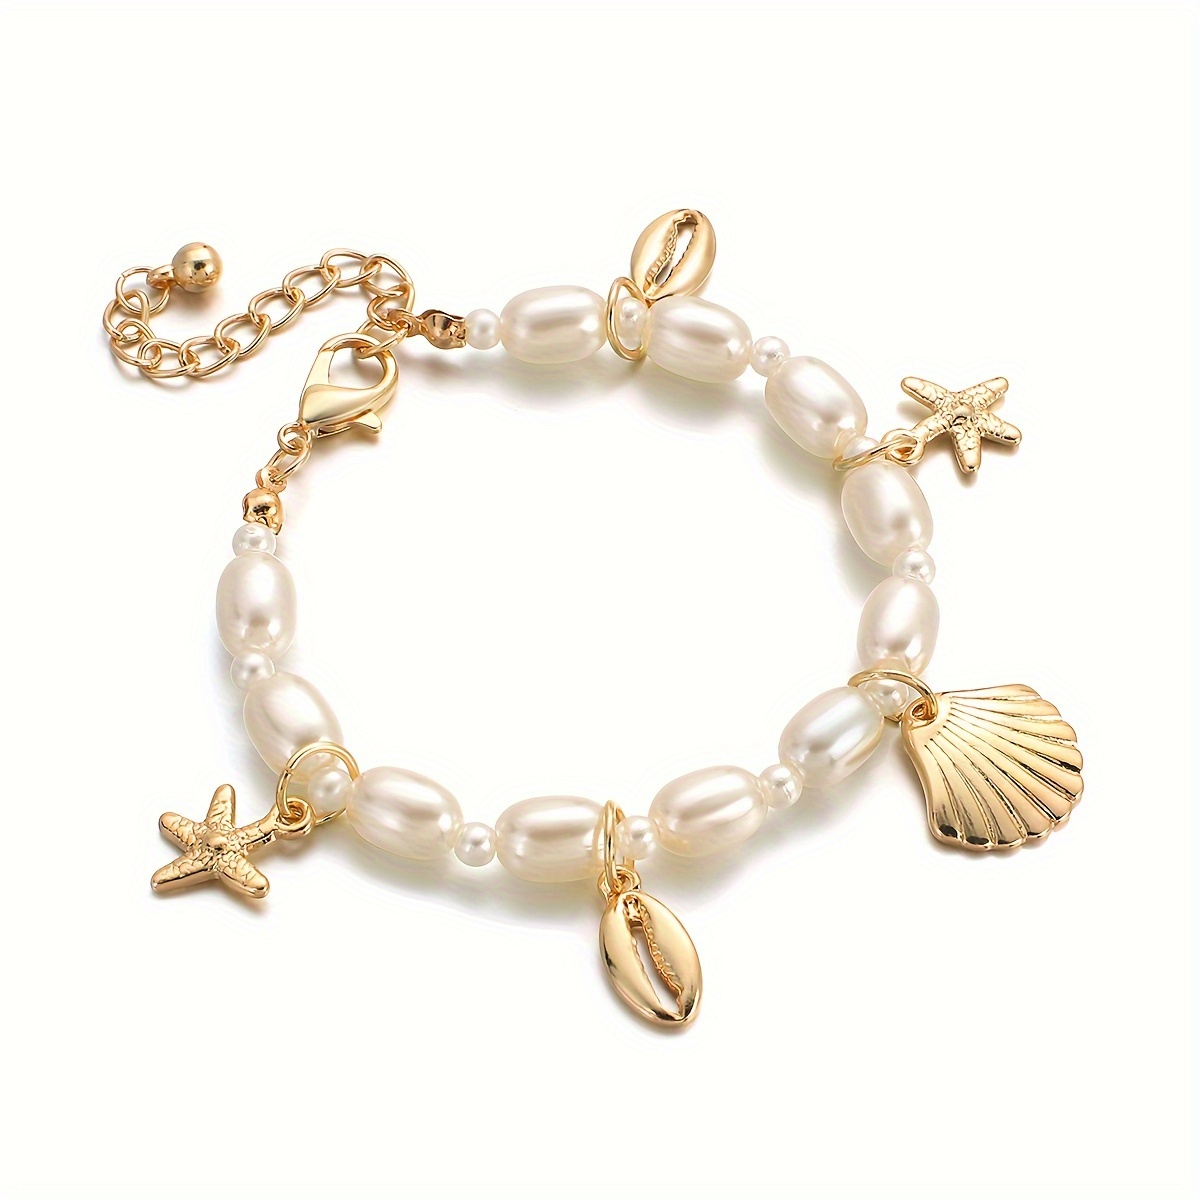 

Bohemian Style Faux Pearl Beaded Bracelet, Seastar Seashell Charm Pendant Link Chain Bracelets Summer Beach Hand Jewelry For Women